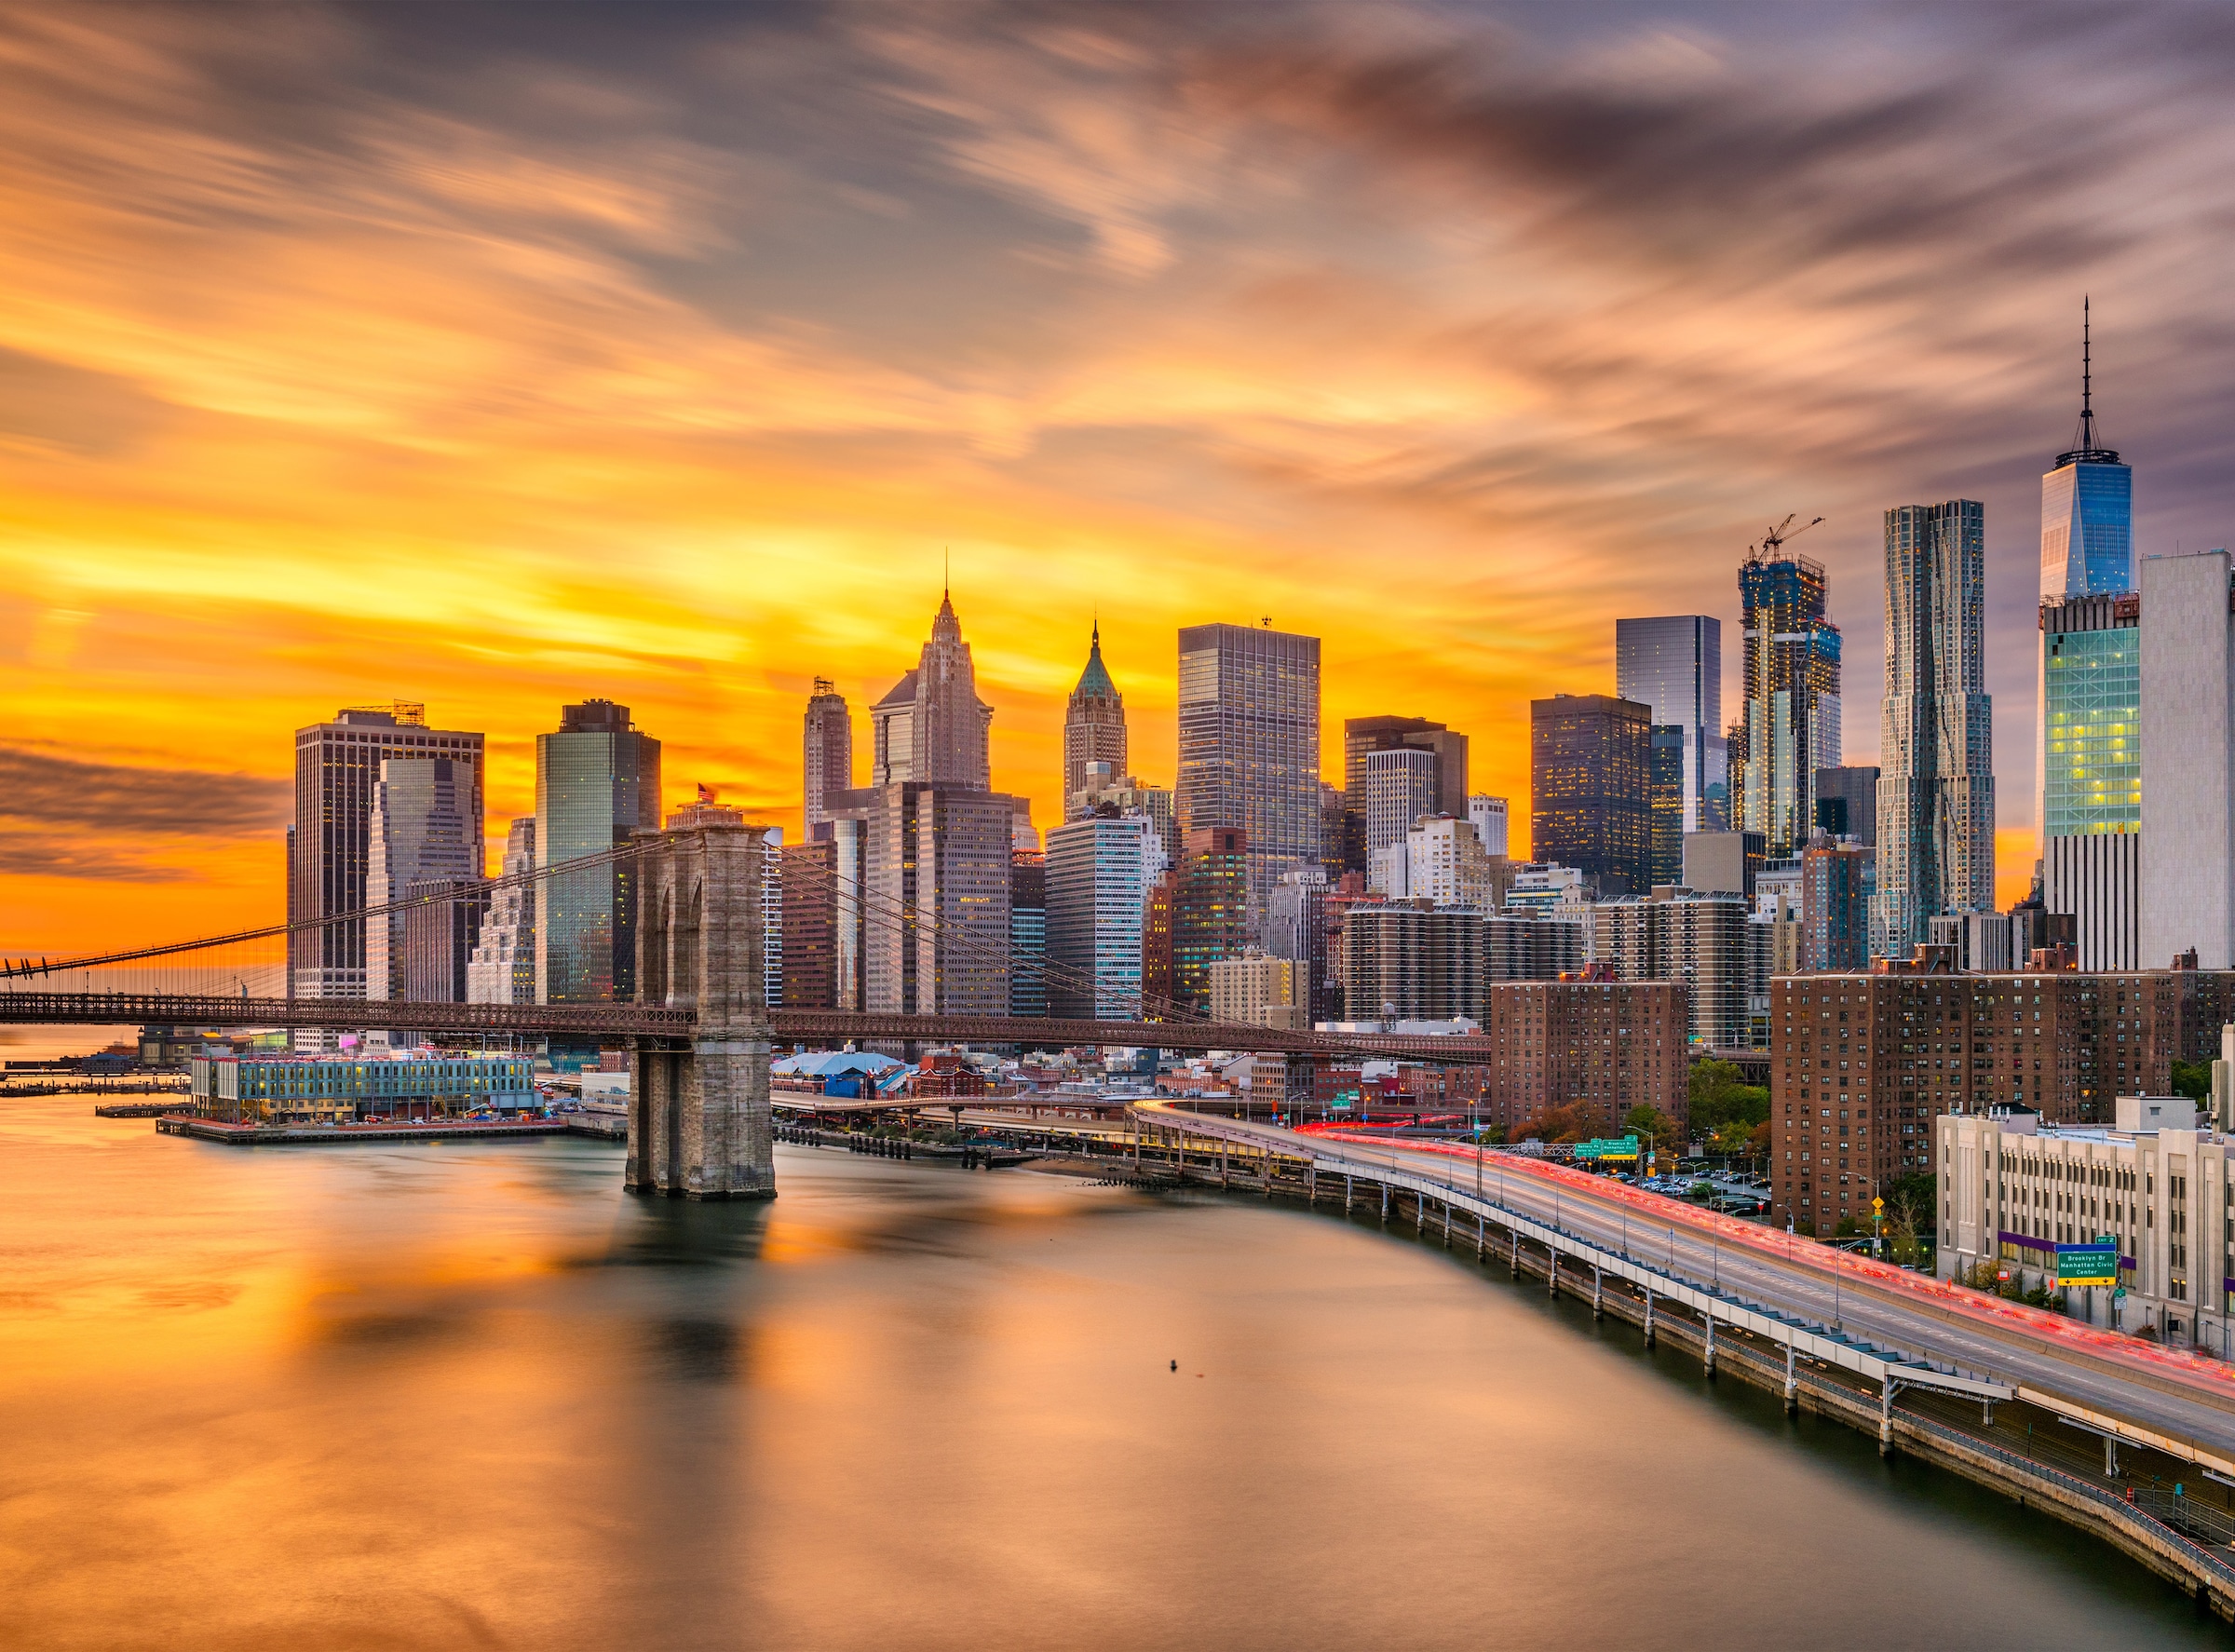 Papermoon Fototapete "Manhattan Skyline Sunset"